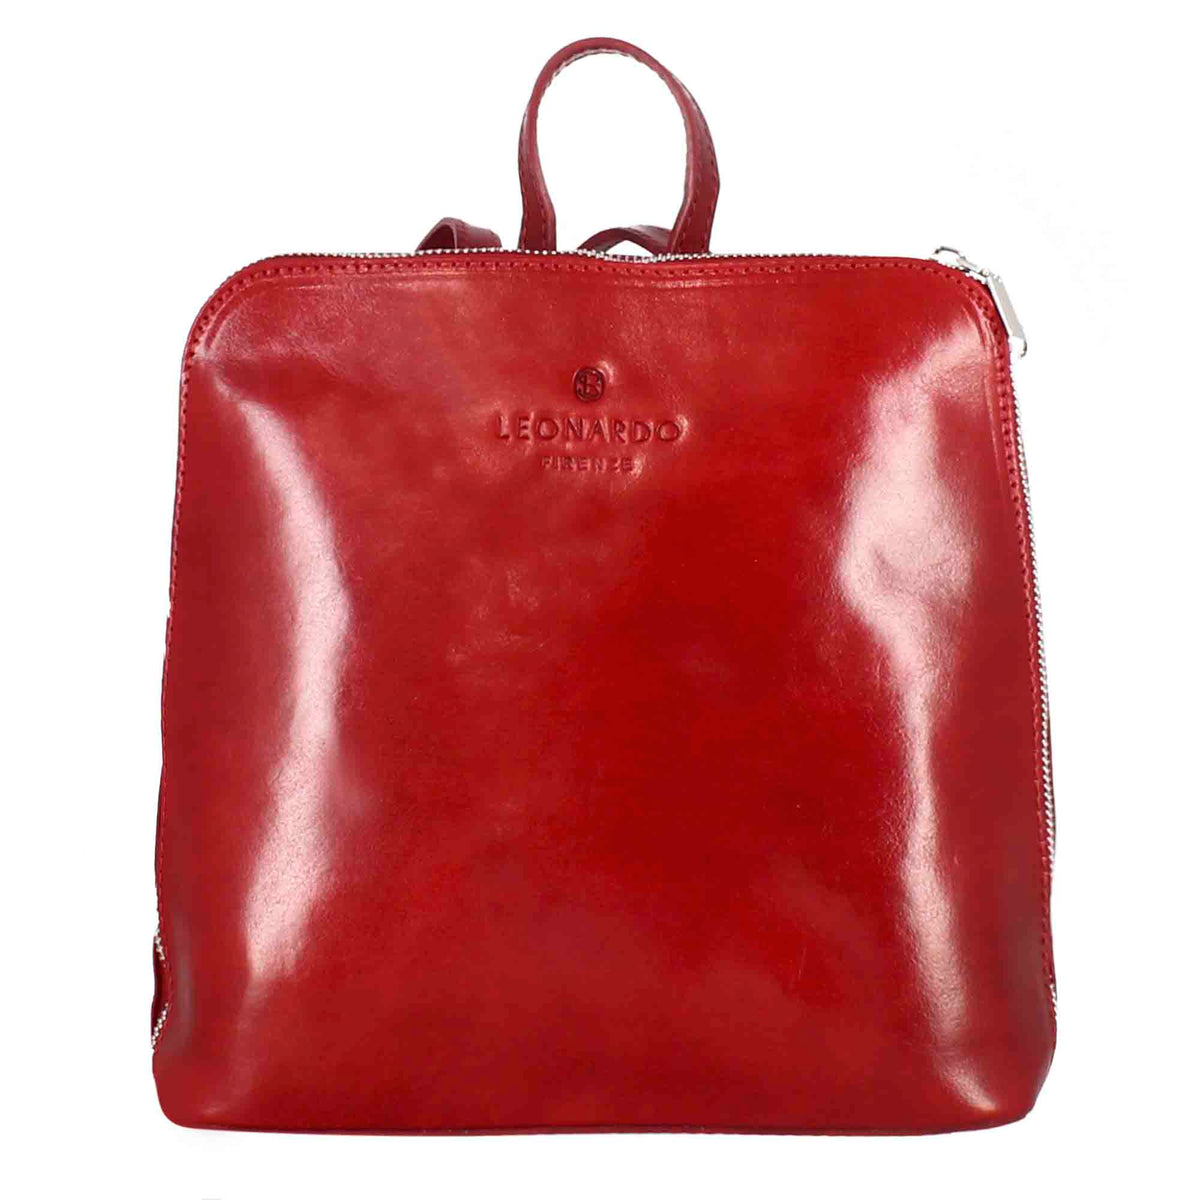 Genfer Damen-Rucksack aus rotem Glattleder mit Reißverschluss